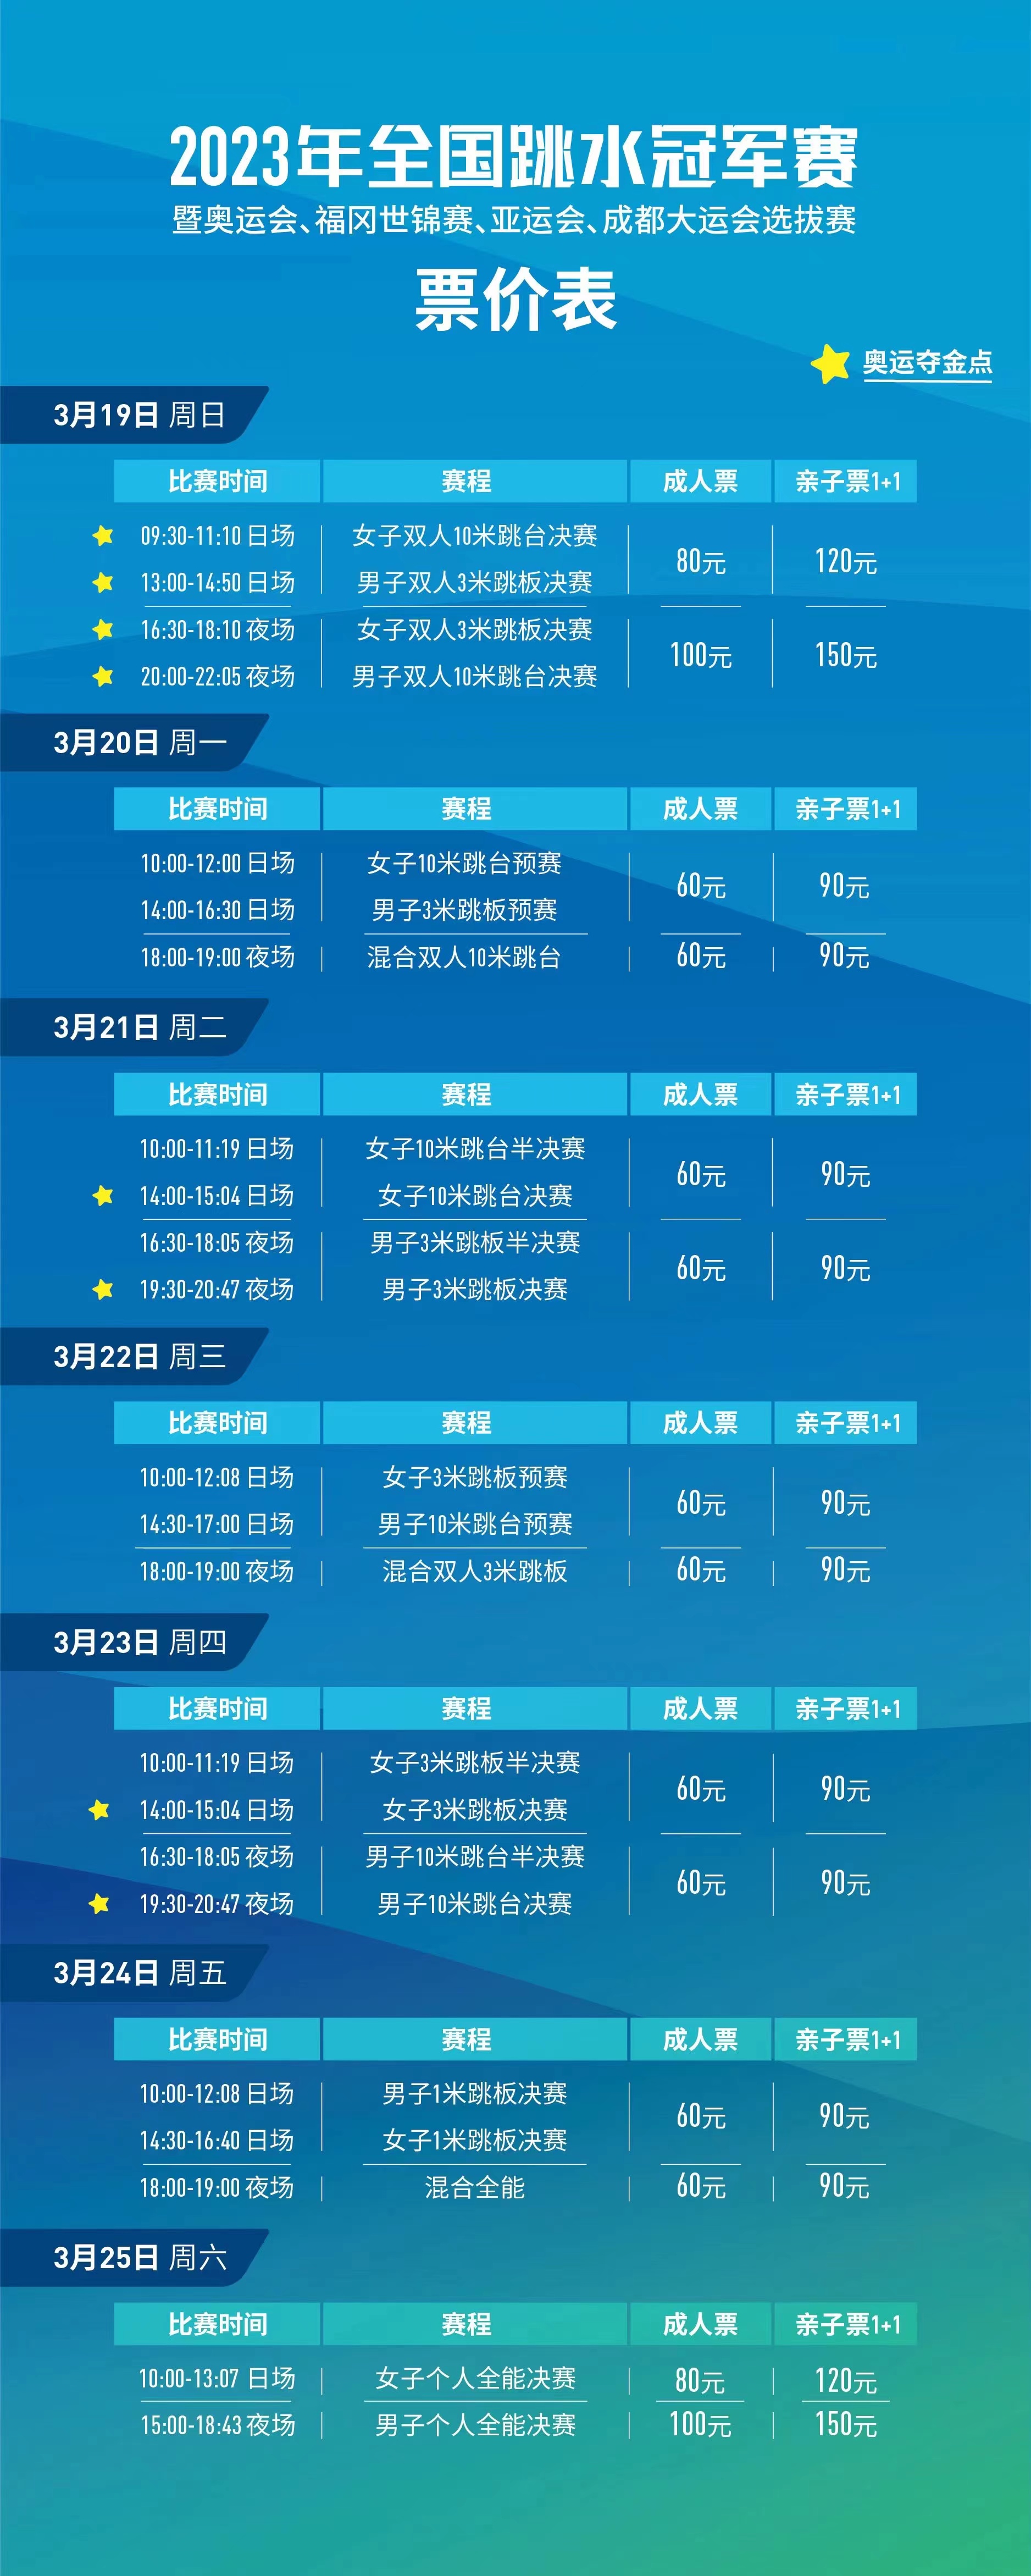 上海跳水冠军赛门票价格和赛程